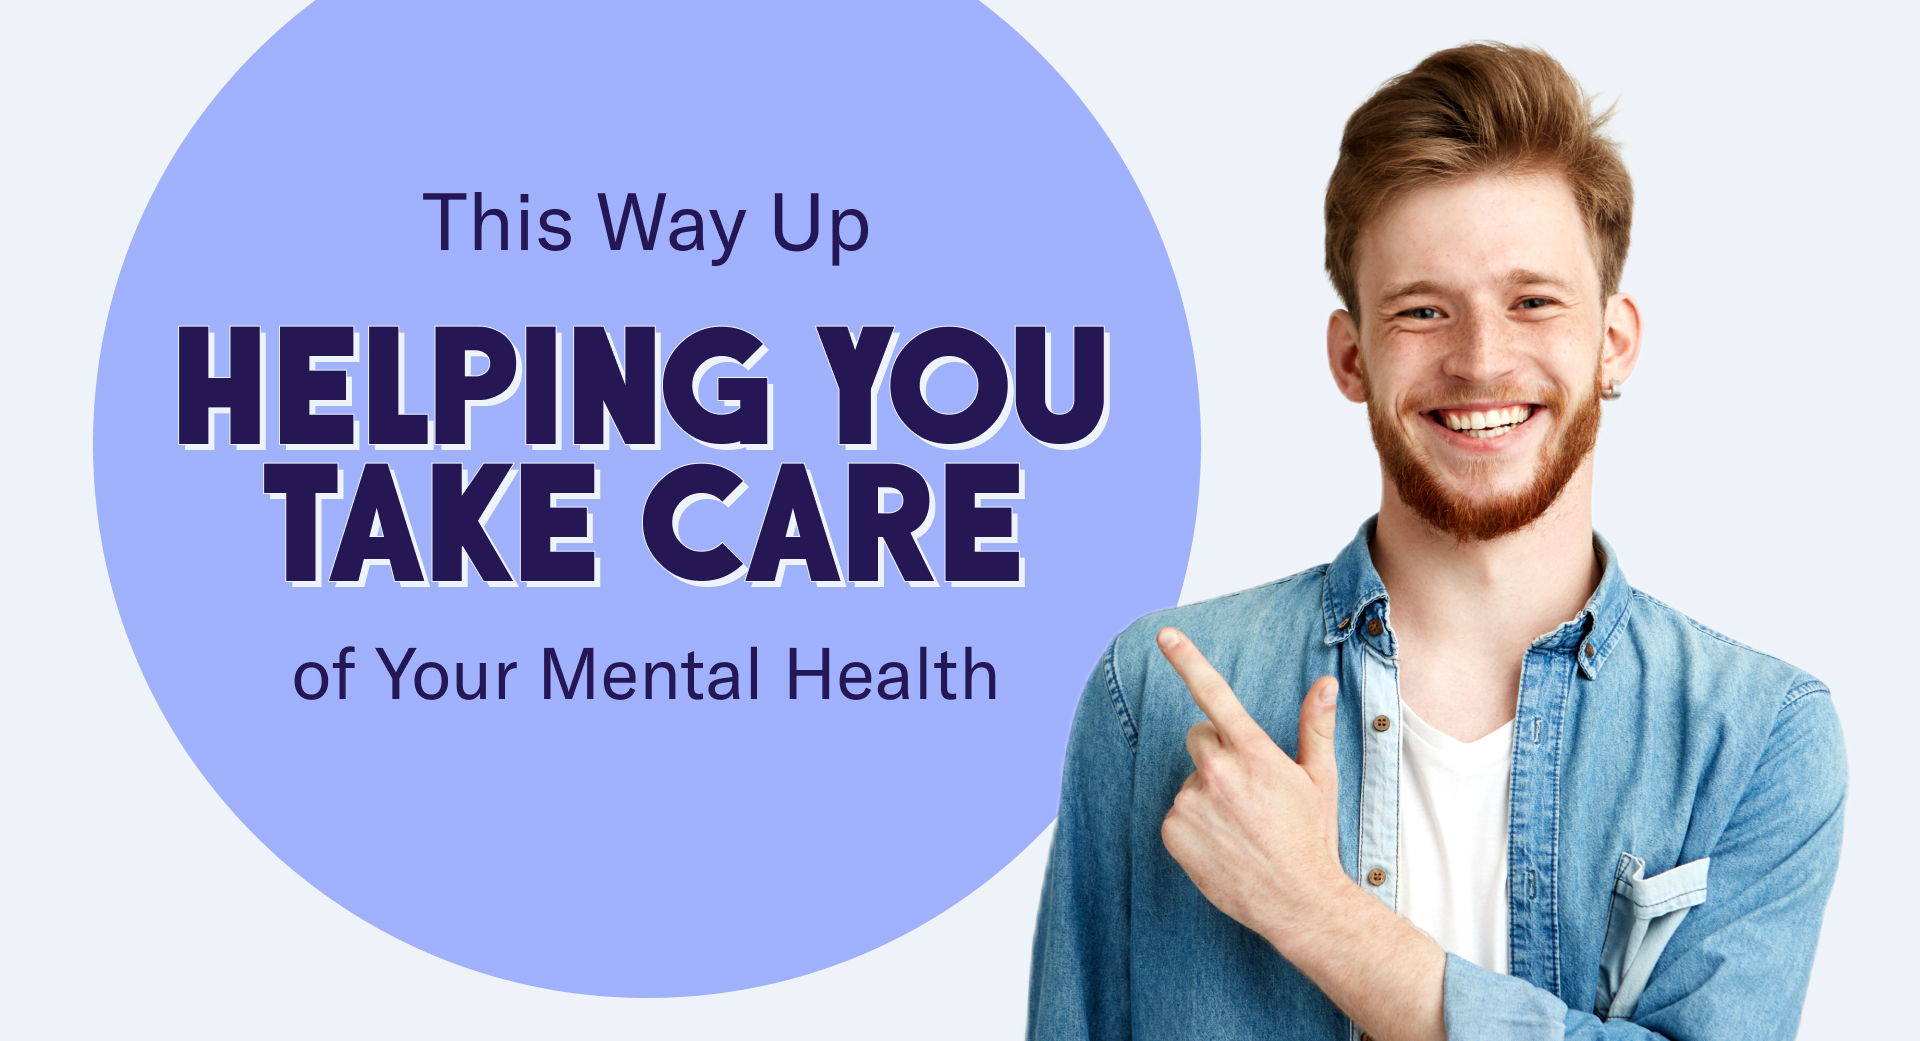 ASSIM, ajudando você a cuidar de sua saúde mental